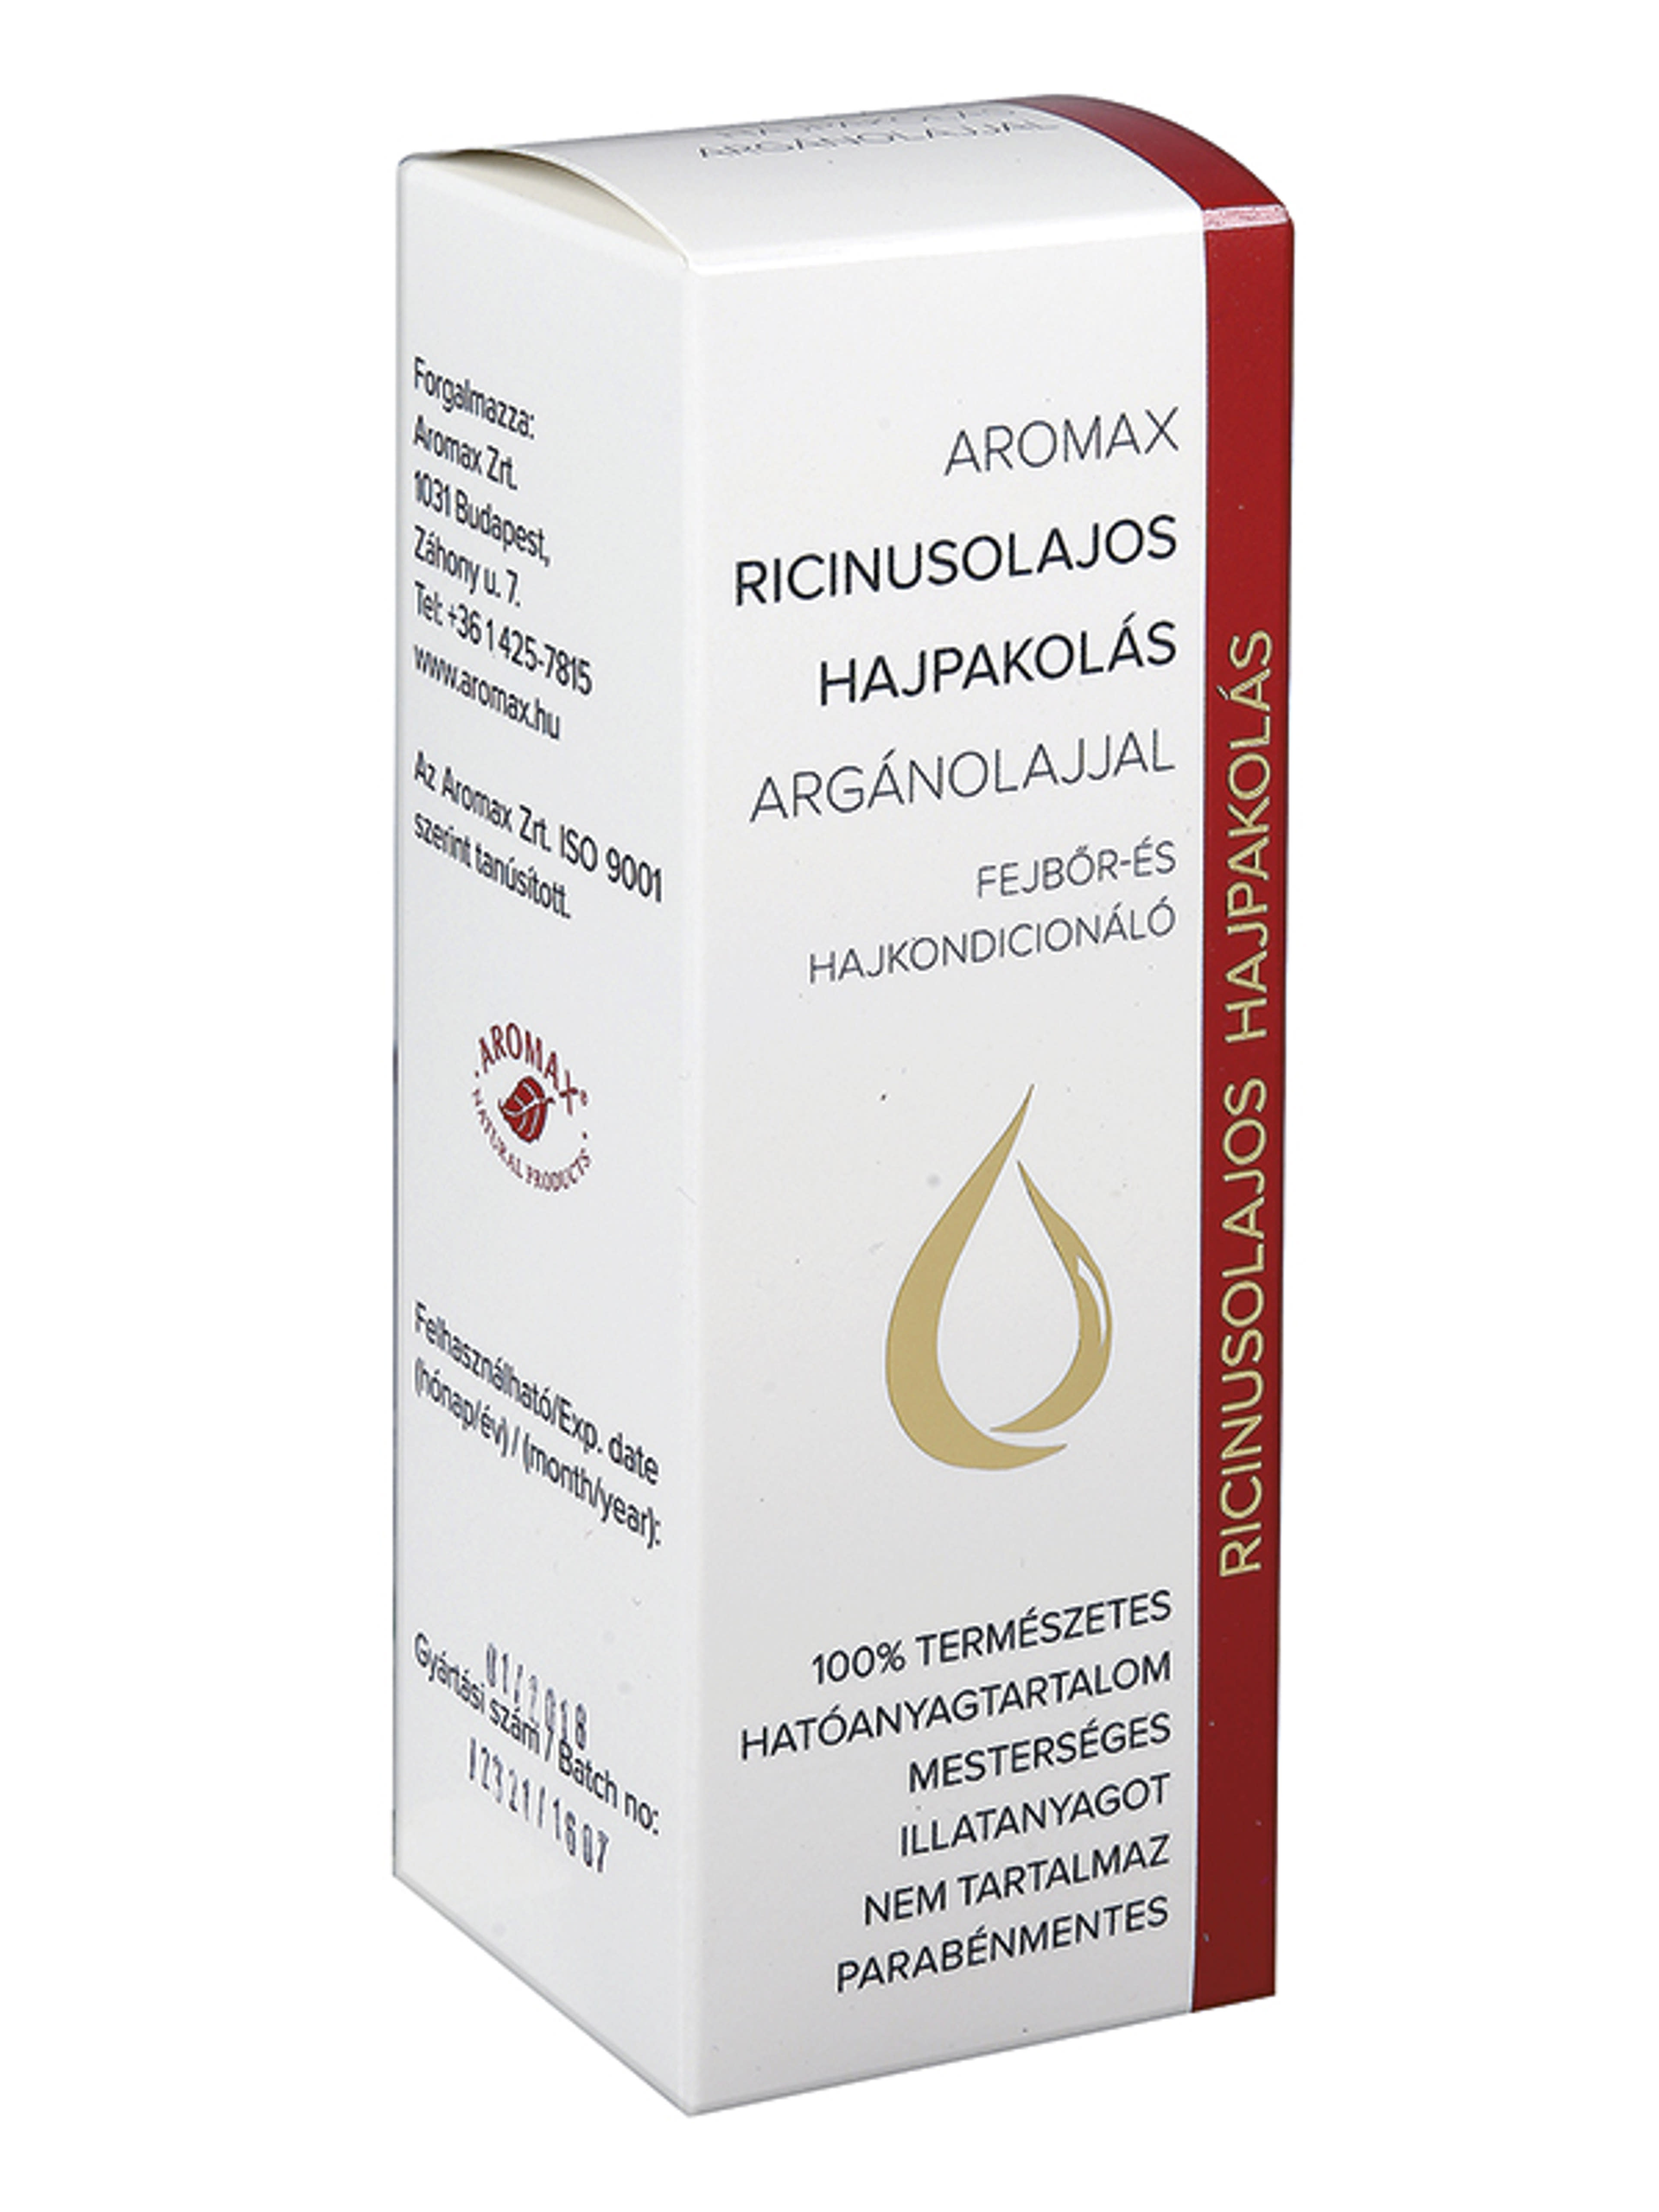 Aromax Ricinusolajos Argánolajjal hajpakolás - 100 ml